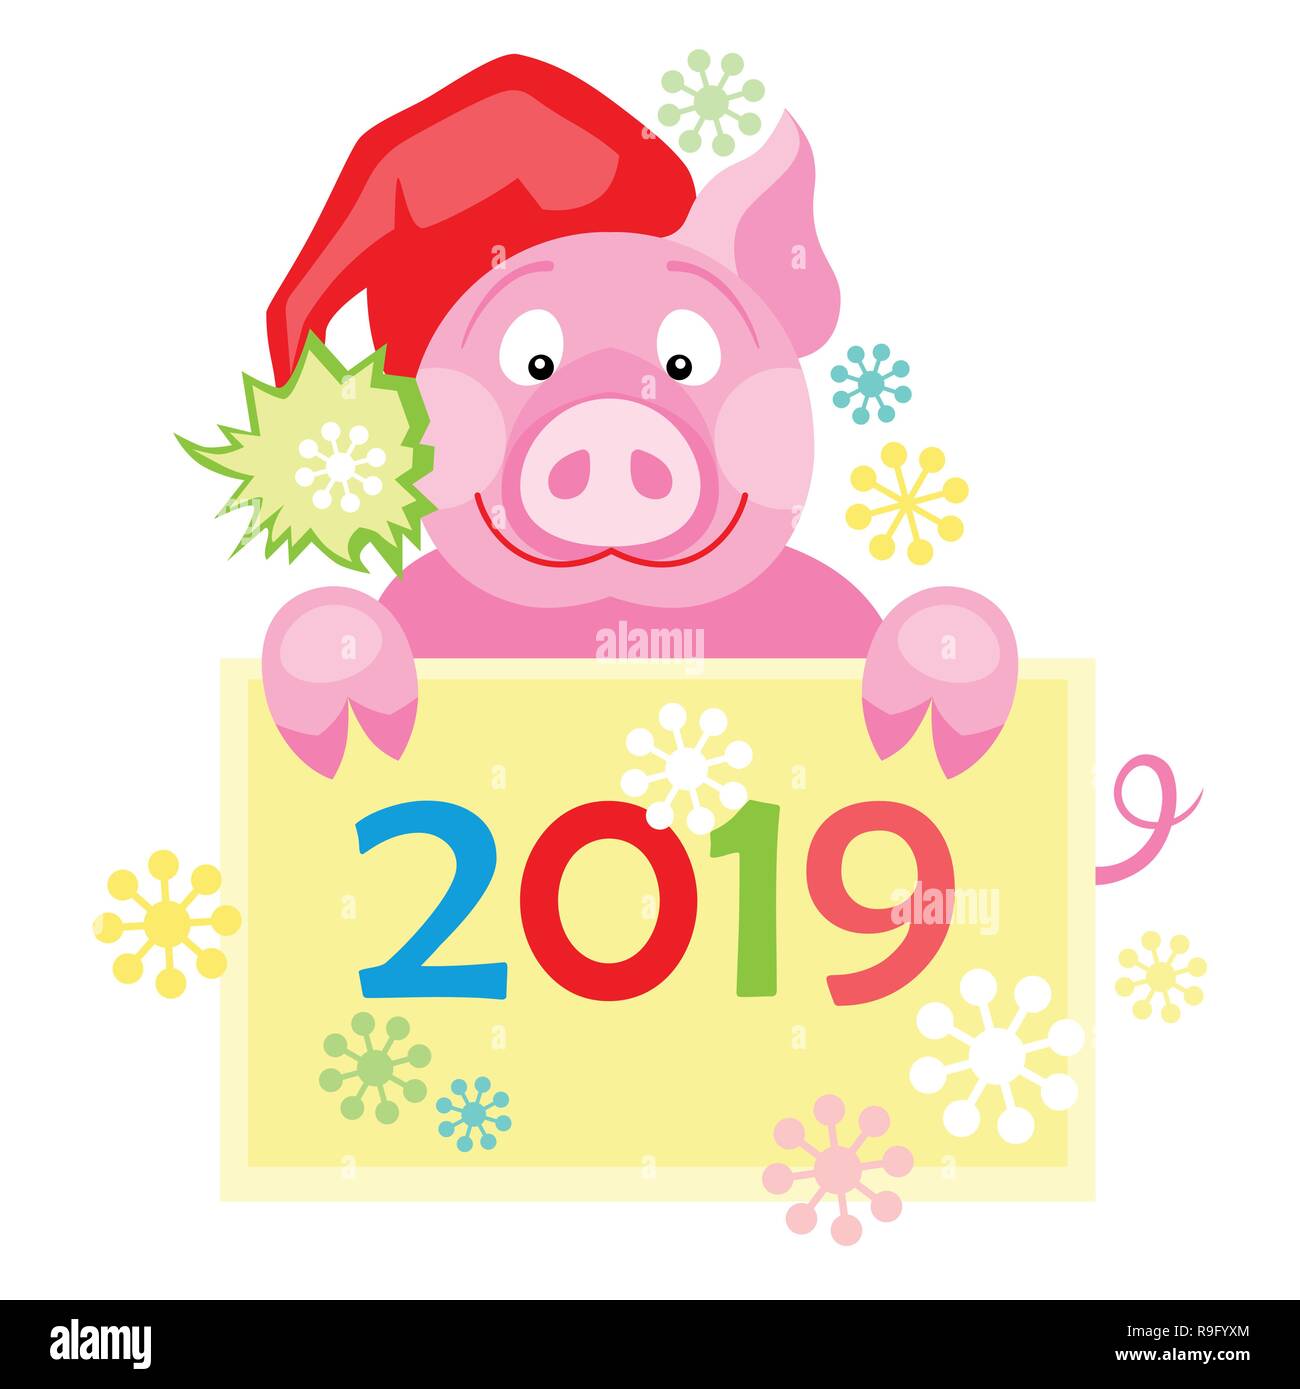 Neues Jahr 2019 Karte mit niedlichen Schwein. Symbol für das Jahr im chinesischen Kalender Stock Vektor